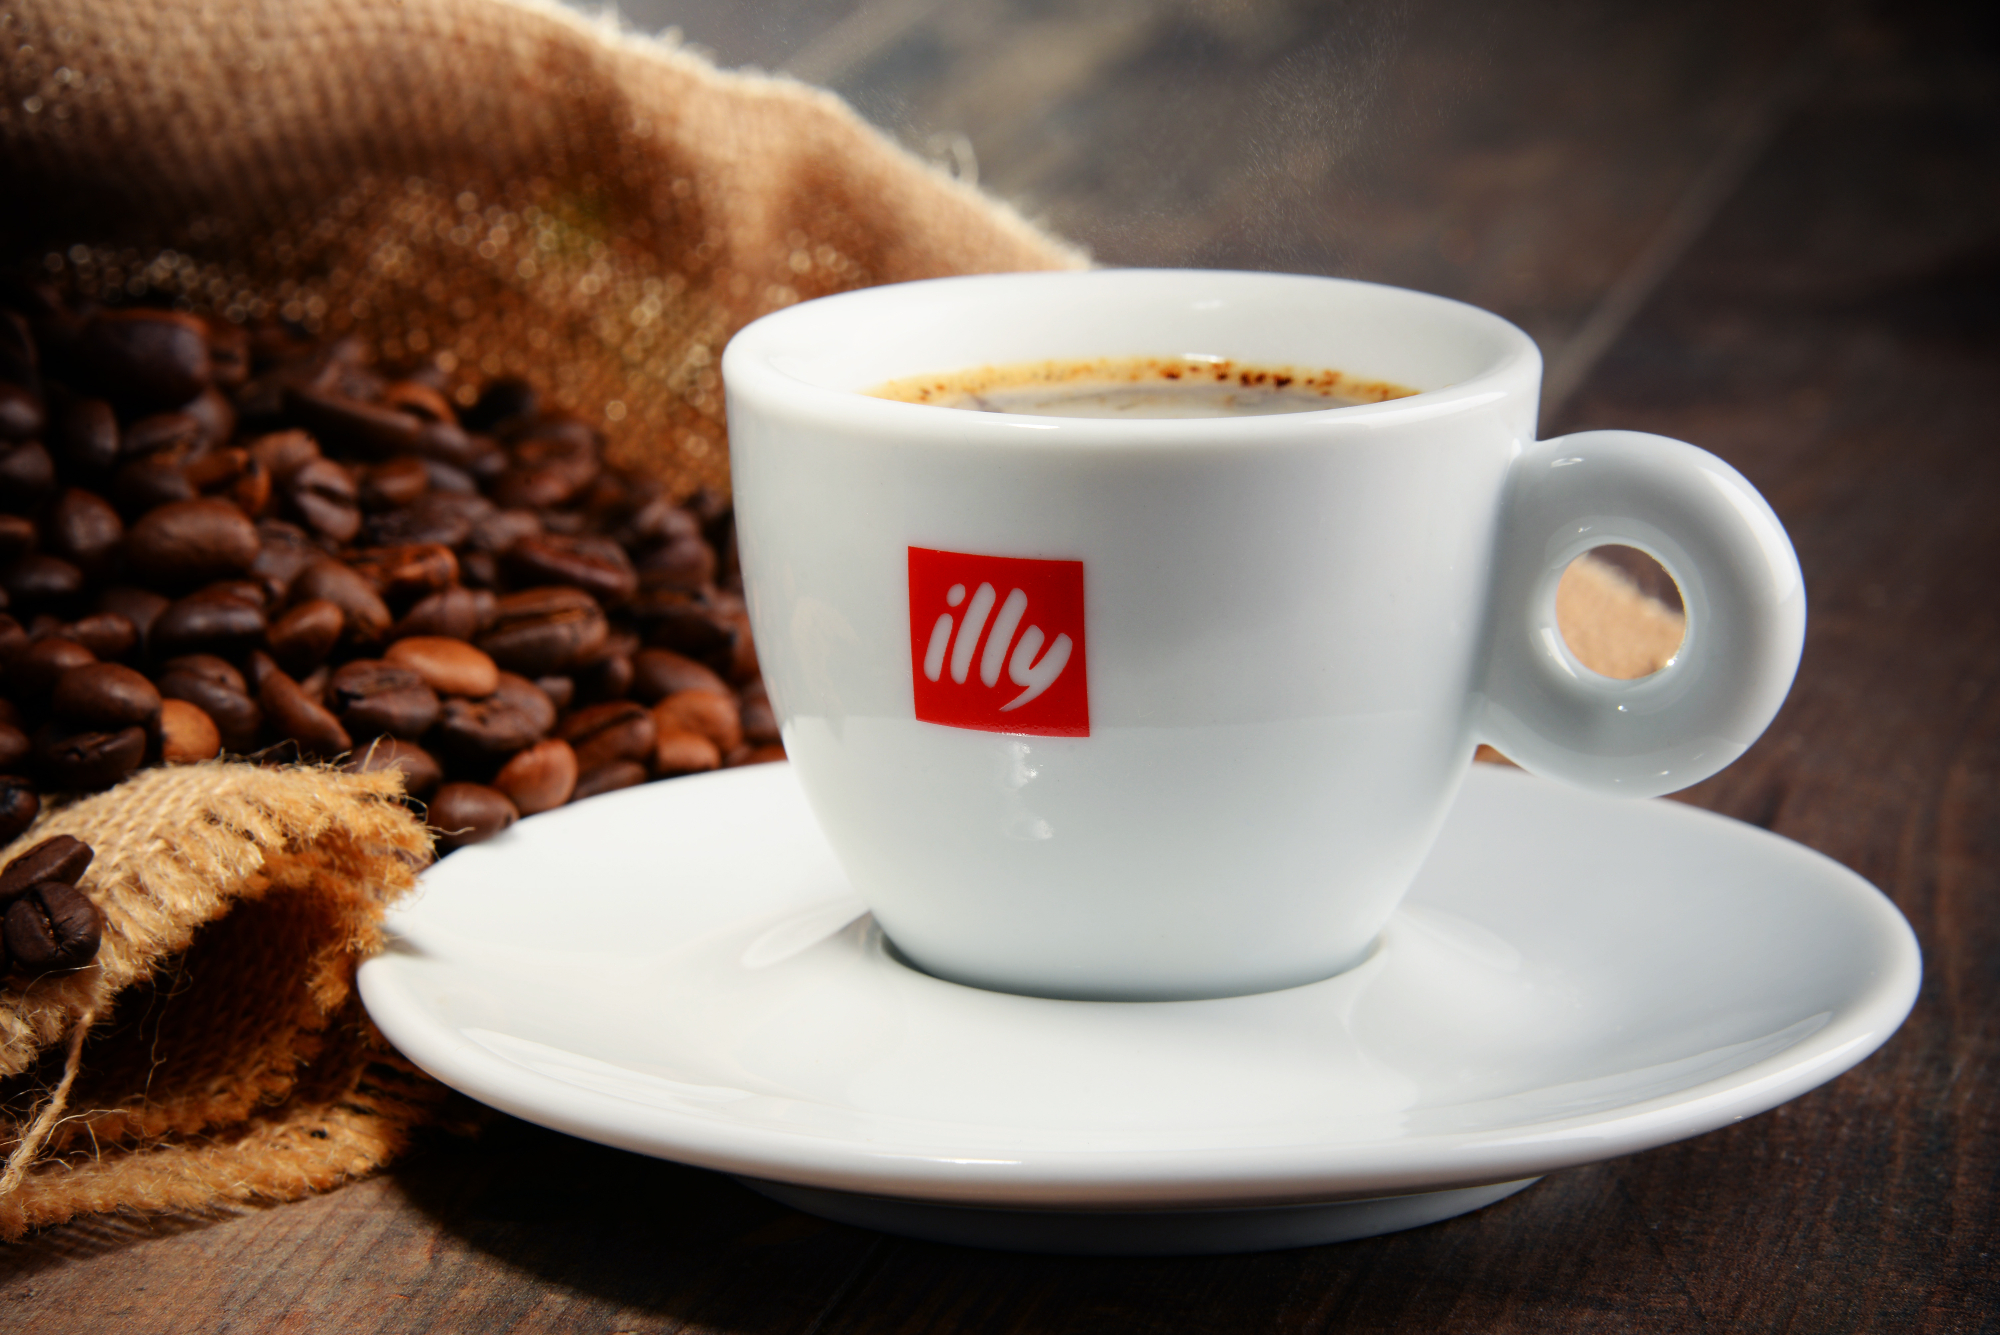 Gdje i kako najbolje nabaviti Illy kavu za kafić po najpovoljnijoj cijeni?